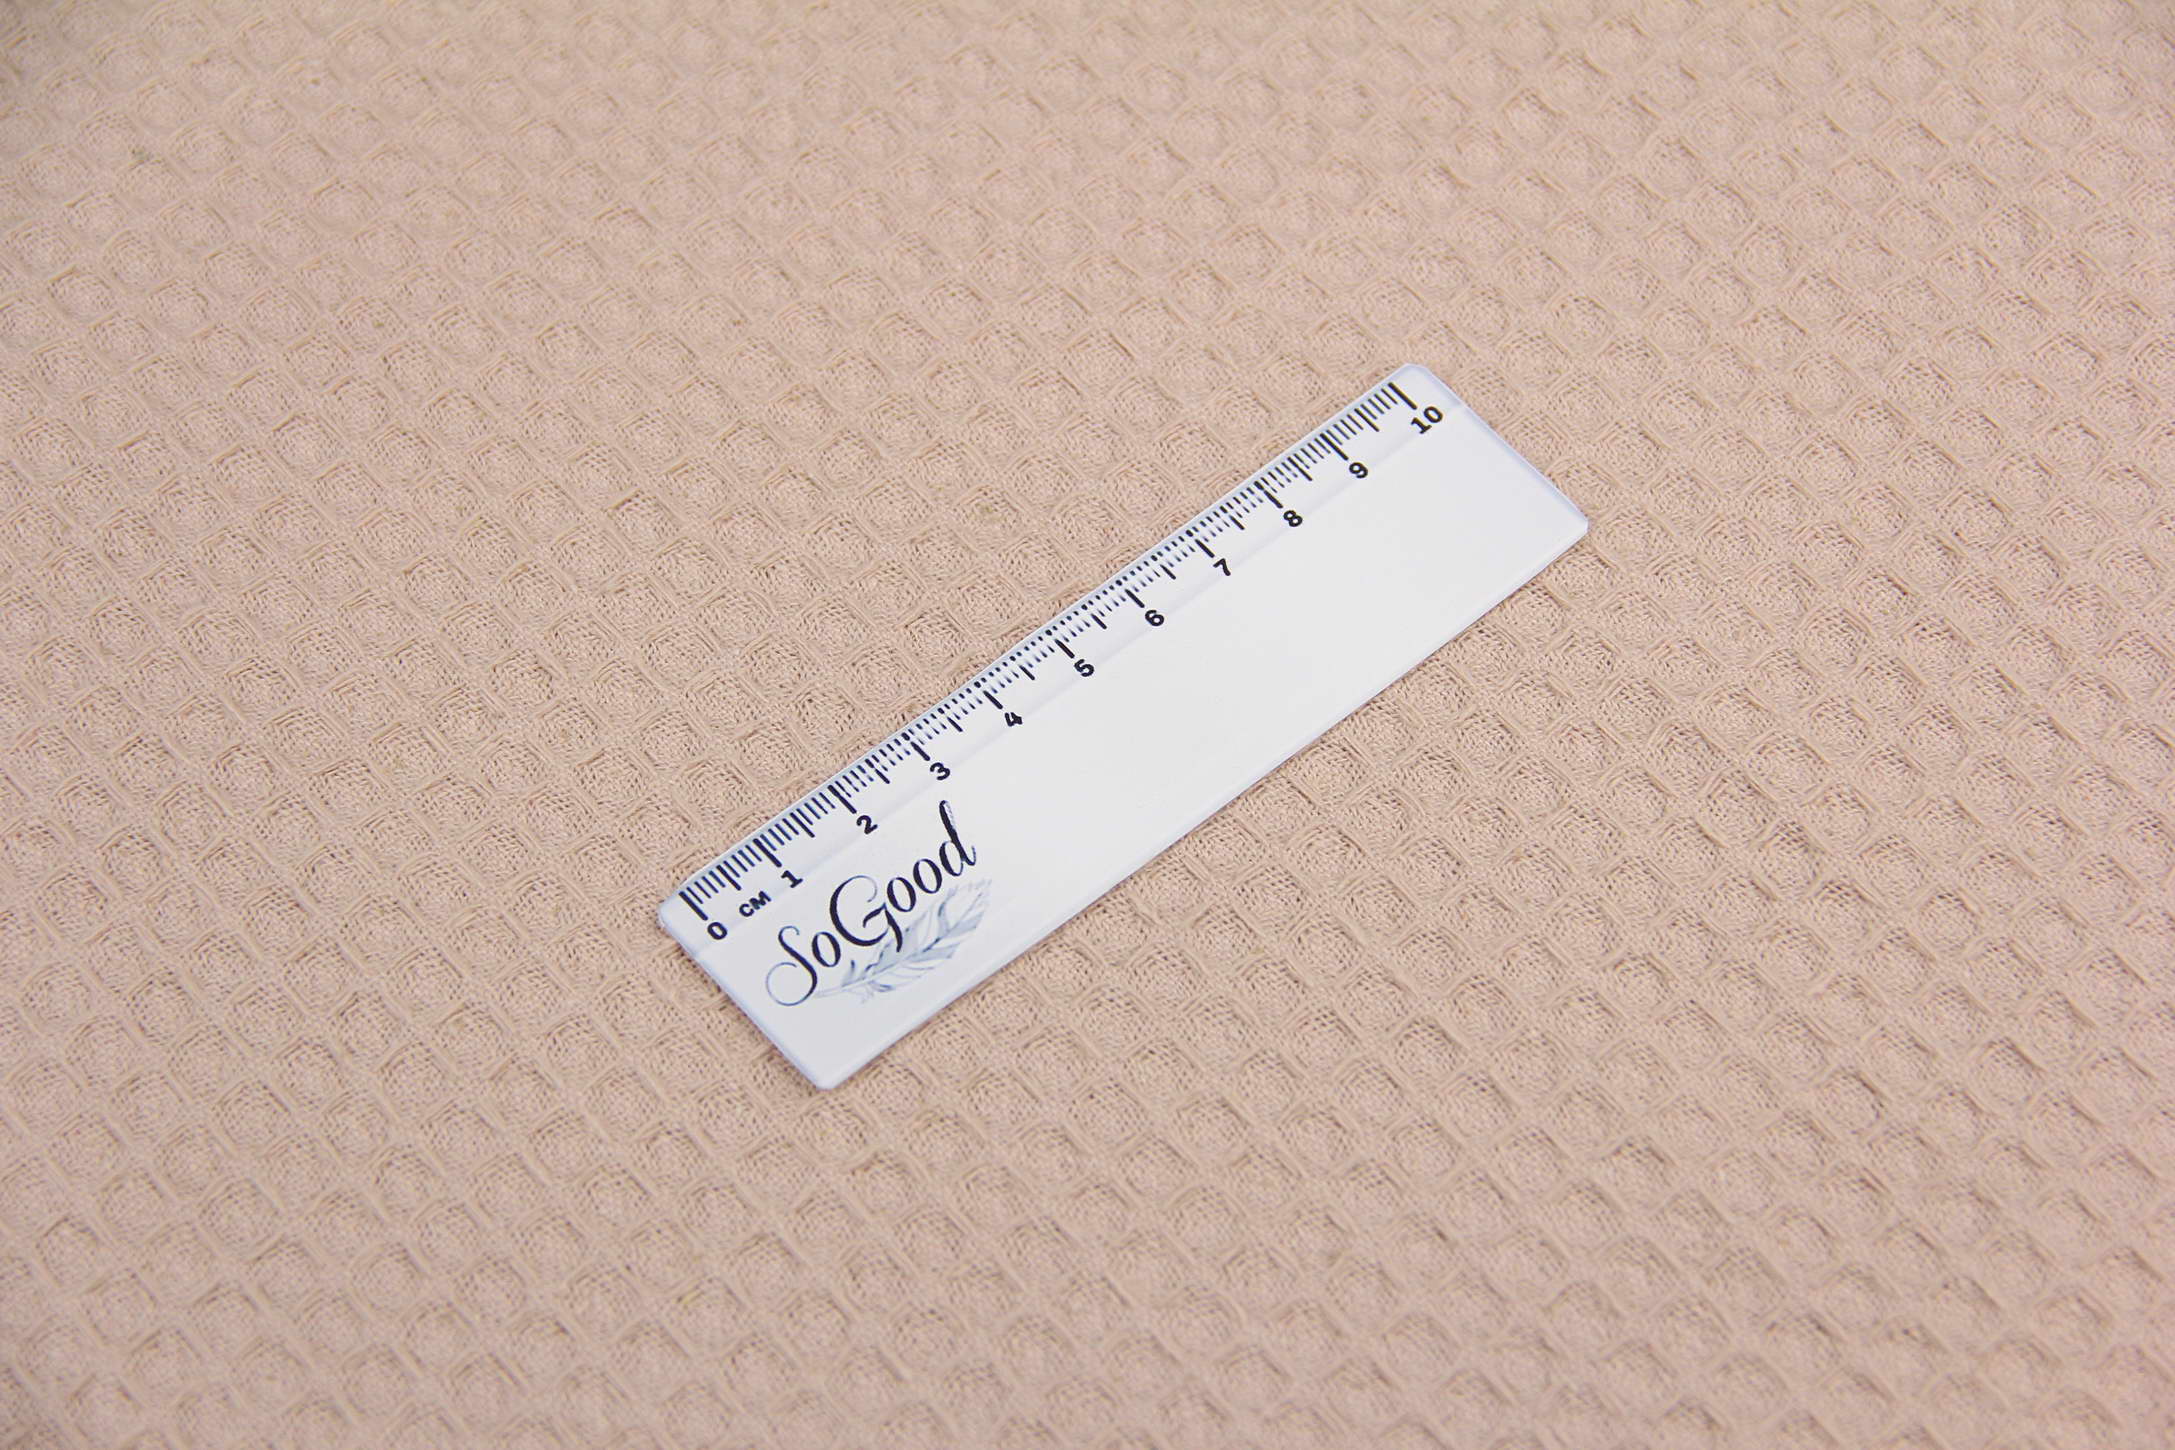 Ткань Вафельное полотно Капучино, Турция, ширина 235 см, плотность 217 г/м2